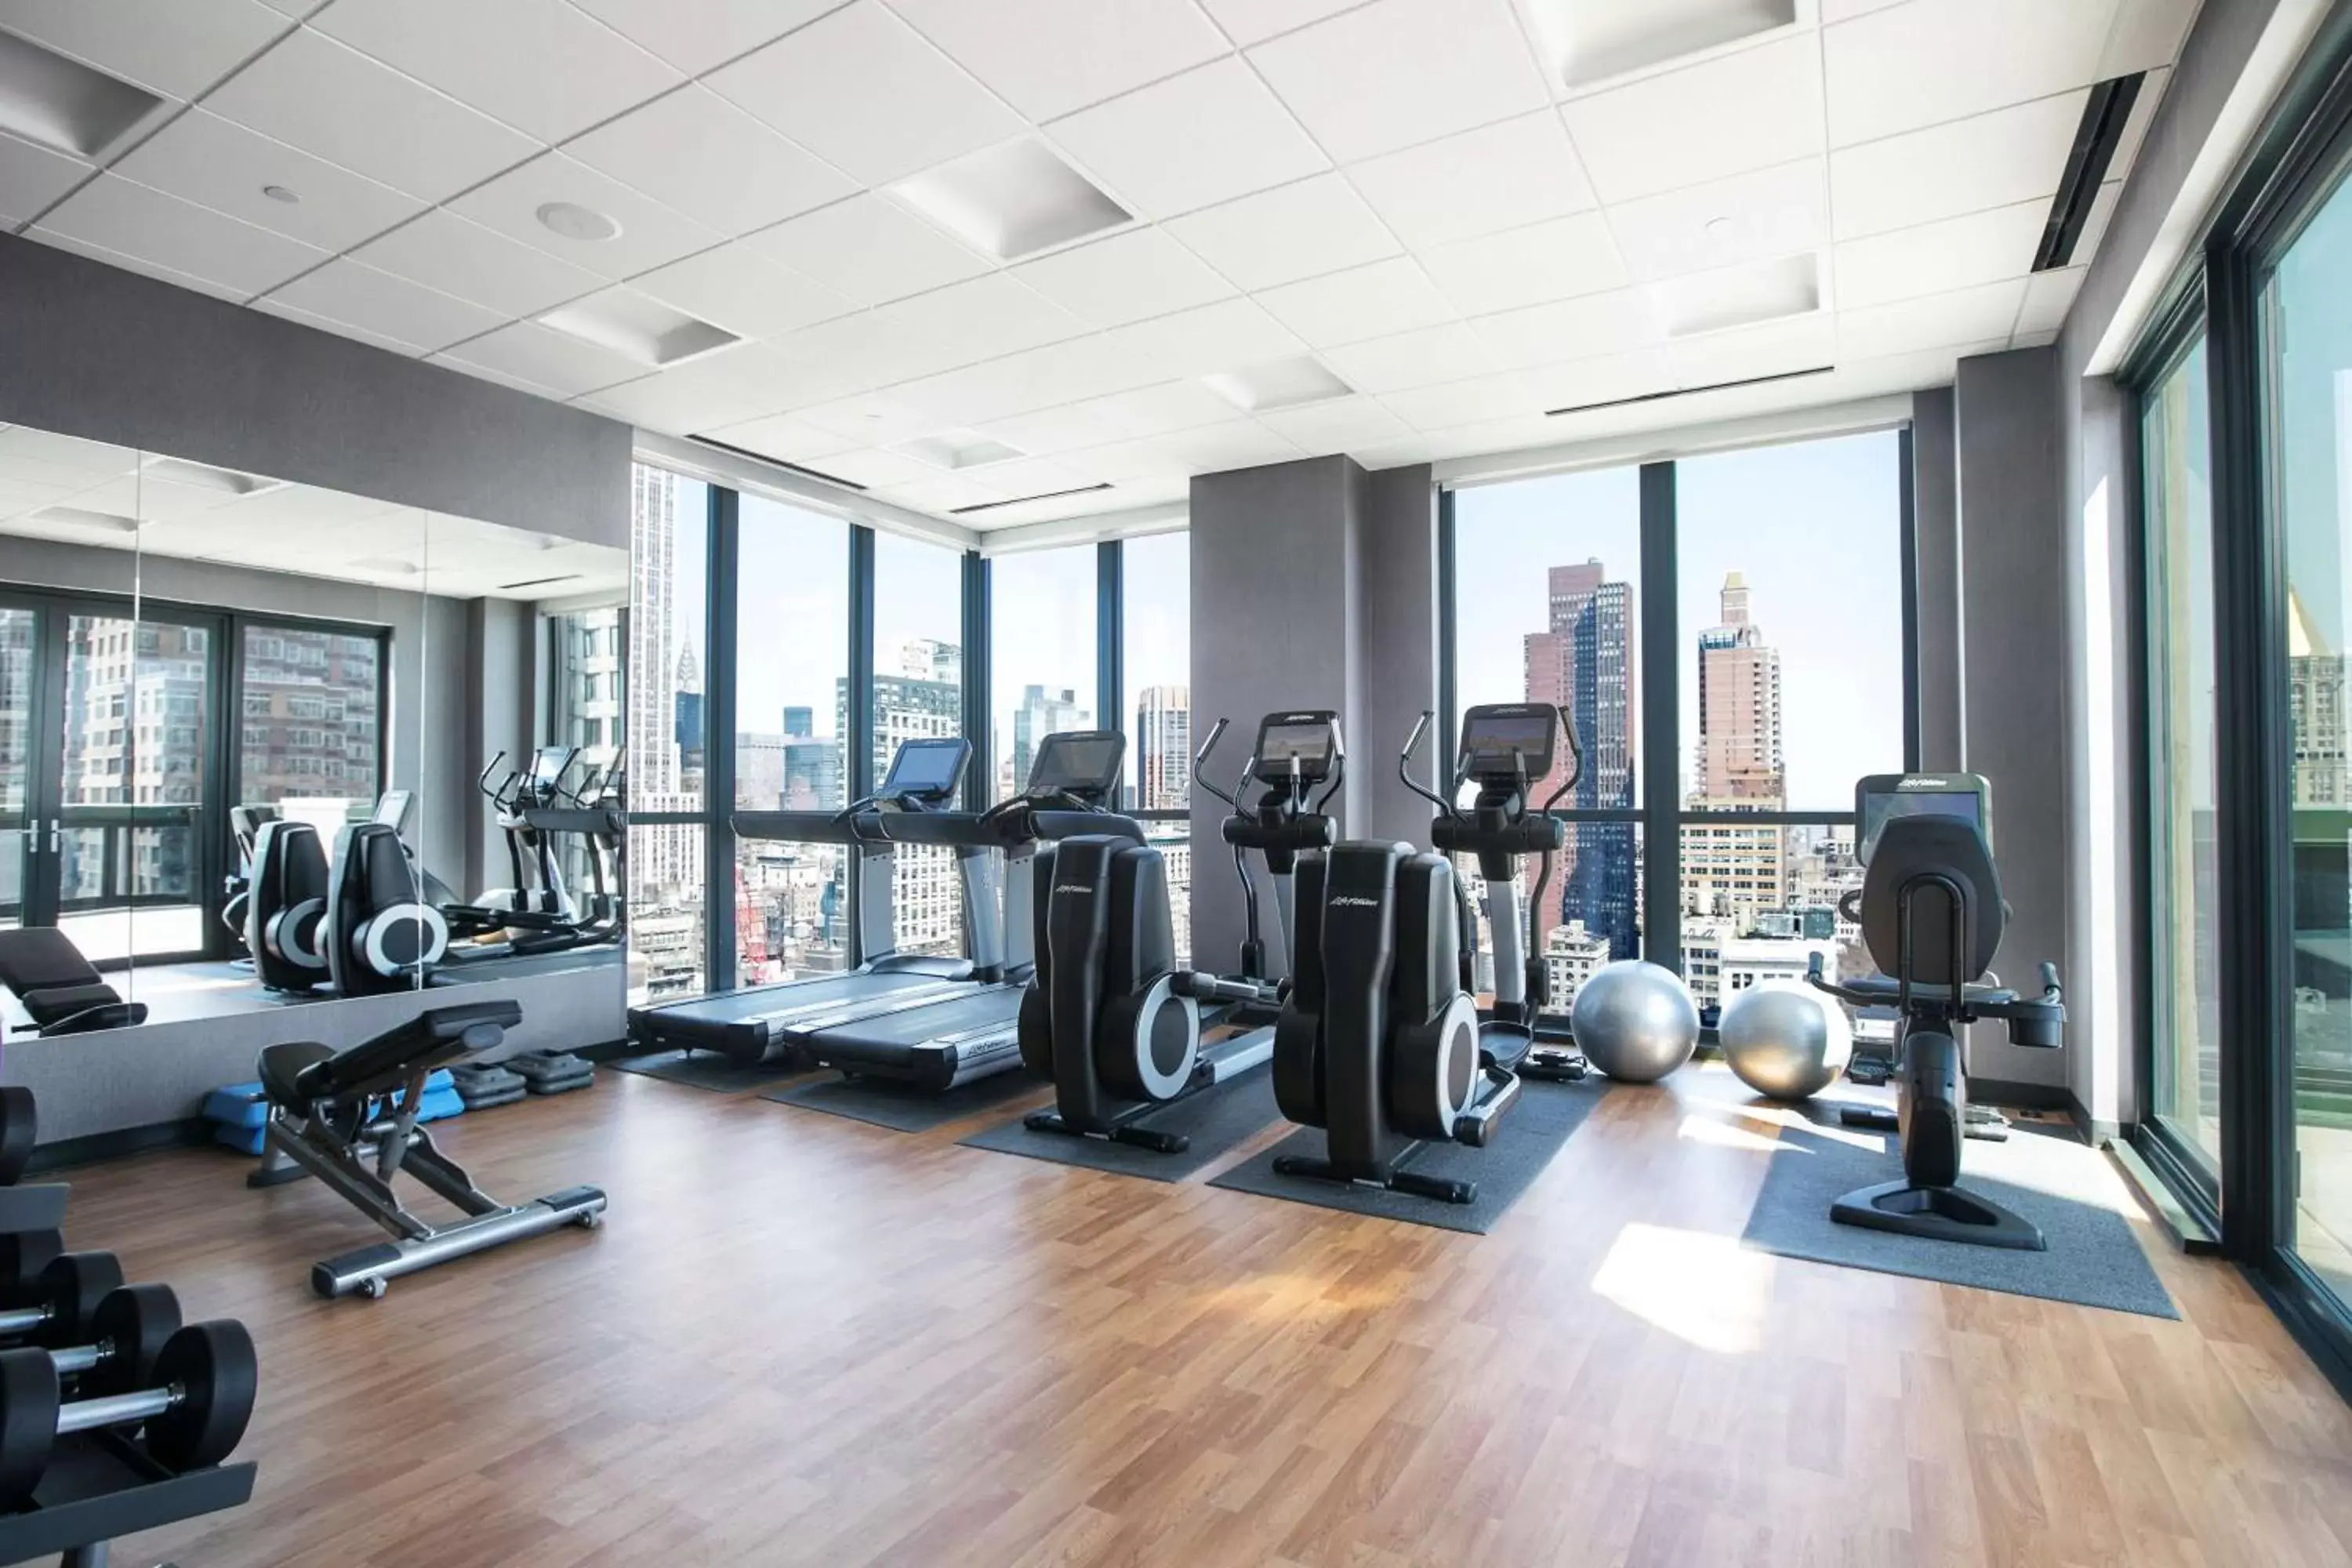 Fitness centre/facilities in Hyatt House New York/Chelsea